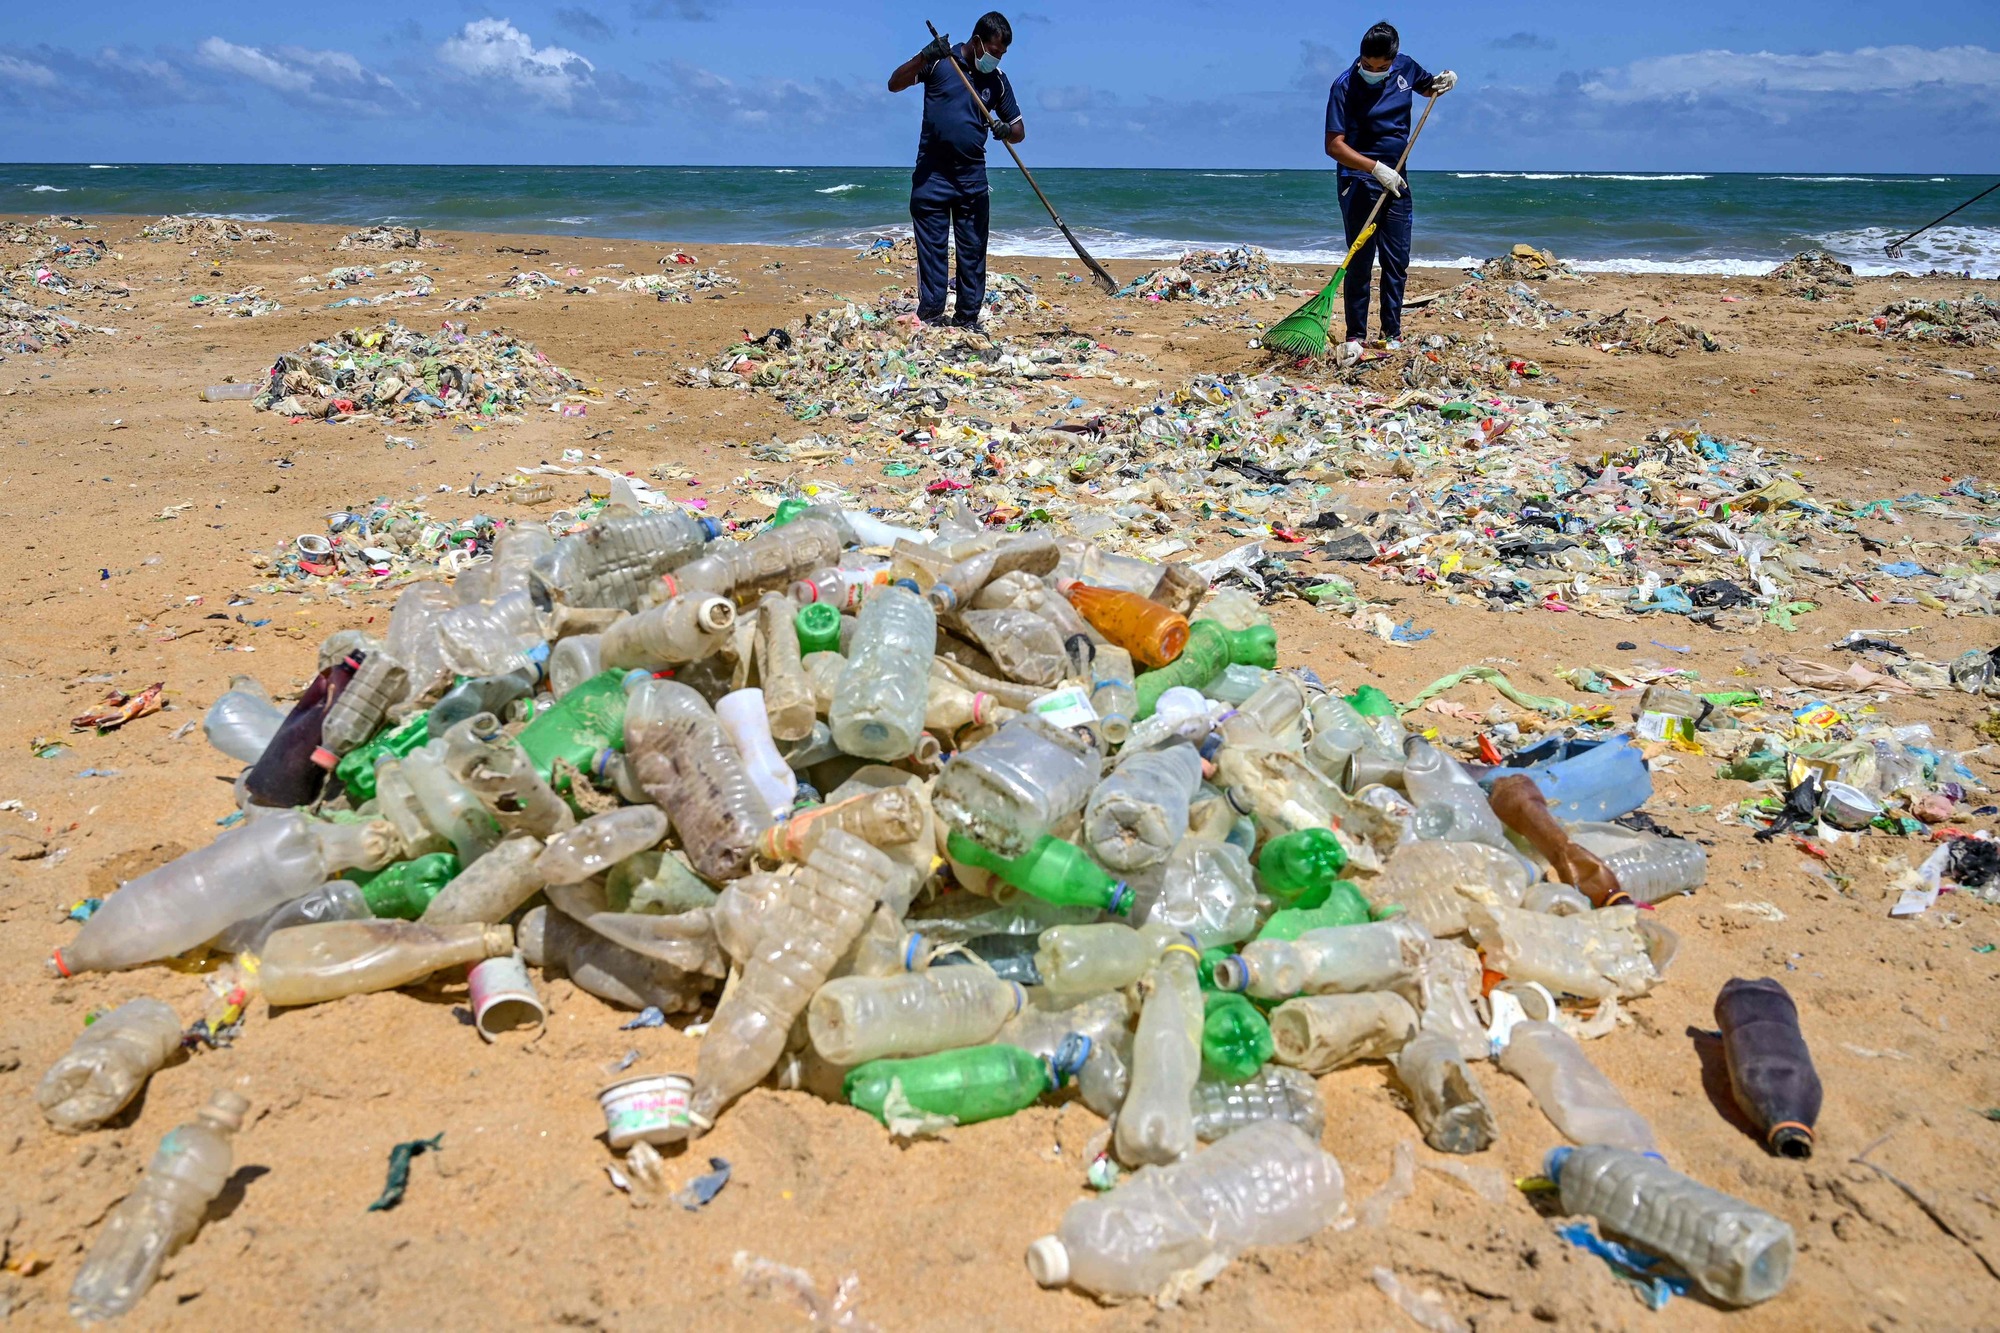 Plastforsøpling er blitt et enormt problem som verdens land nå har bestemt seg for å ta tak i gjennom en global rettslig bindende avtale. Her fra en strand i Sri Lanka i 2020.